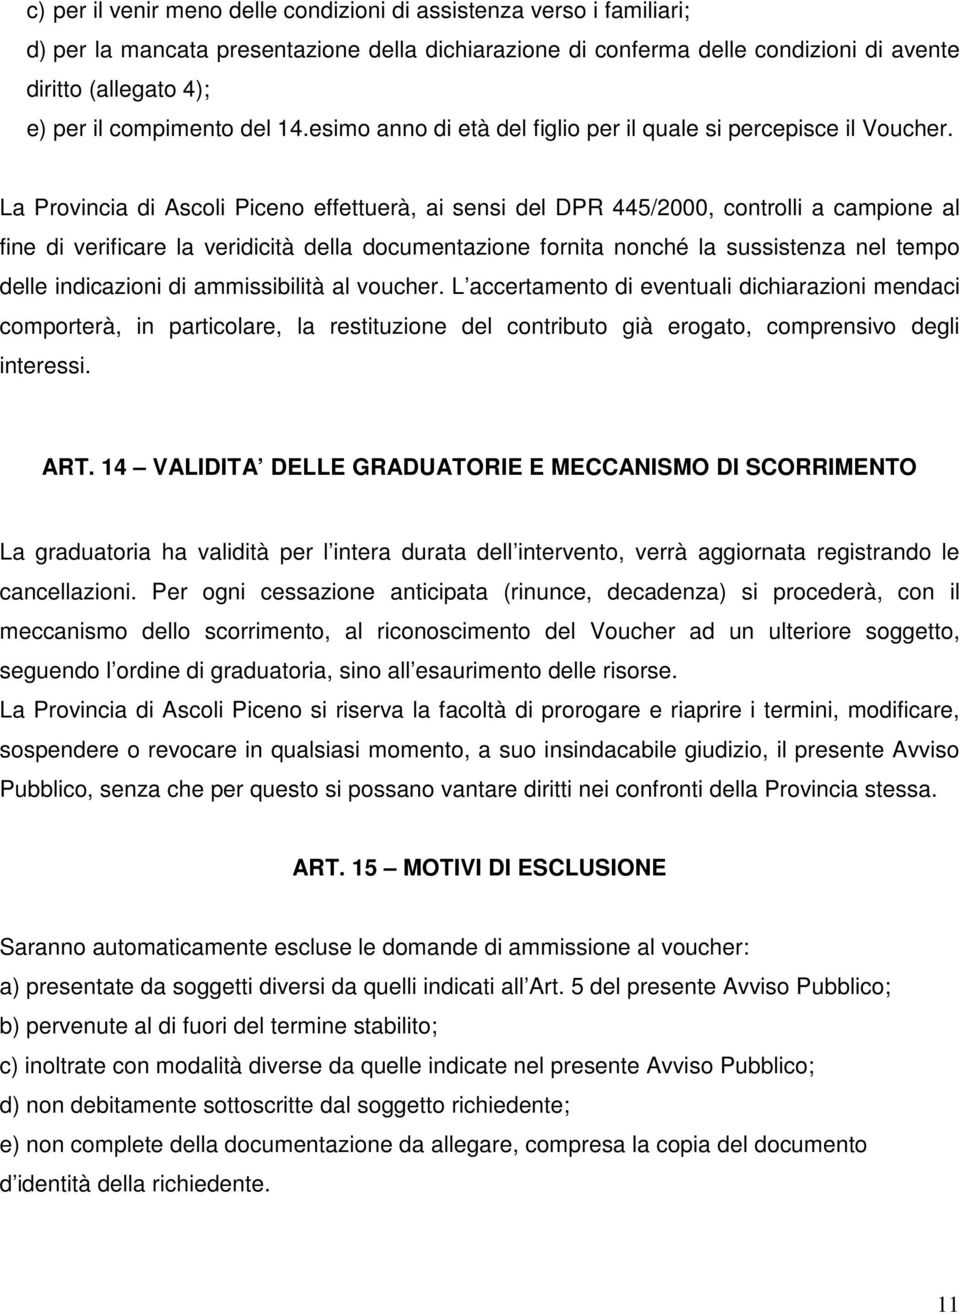 La Provincia di Ascoli Piceno effettuerà, ai sensi del DPR 445/2000, controlli a campione al fine di verificare la veridicità della documentazione fornita nonché la sussistenza nel tempo delle